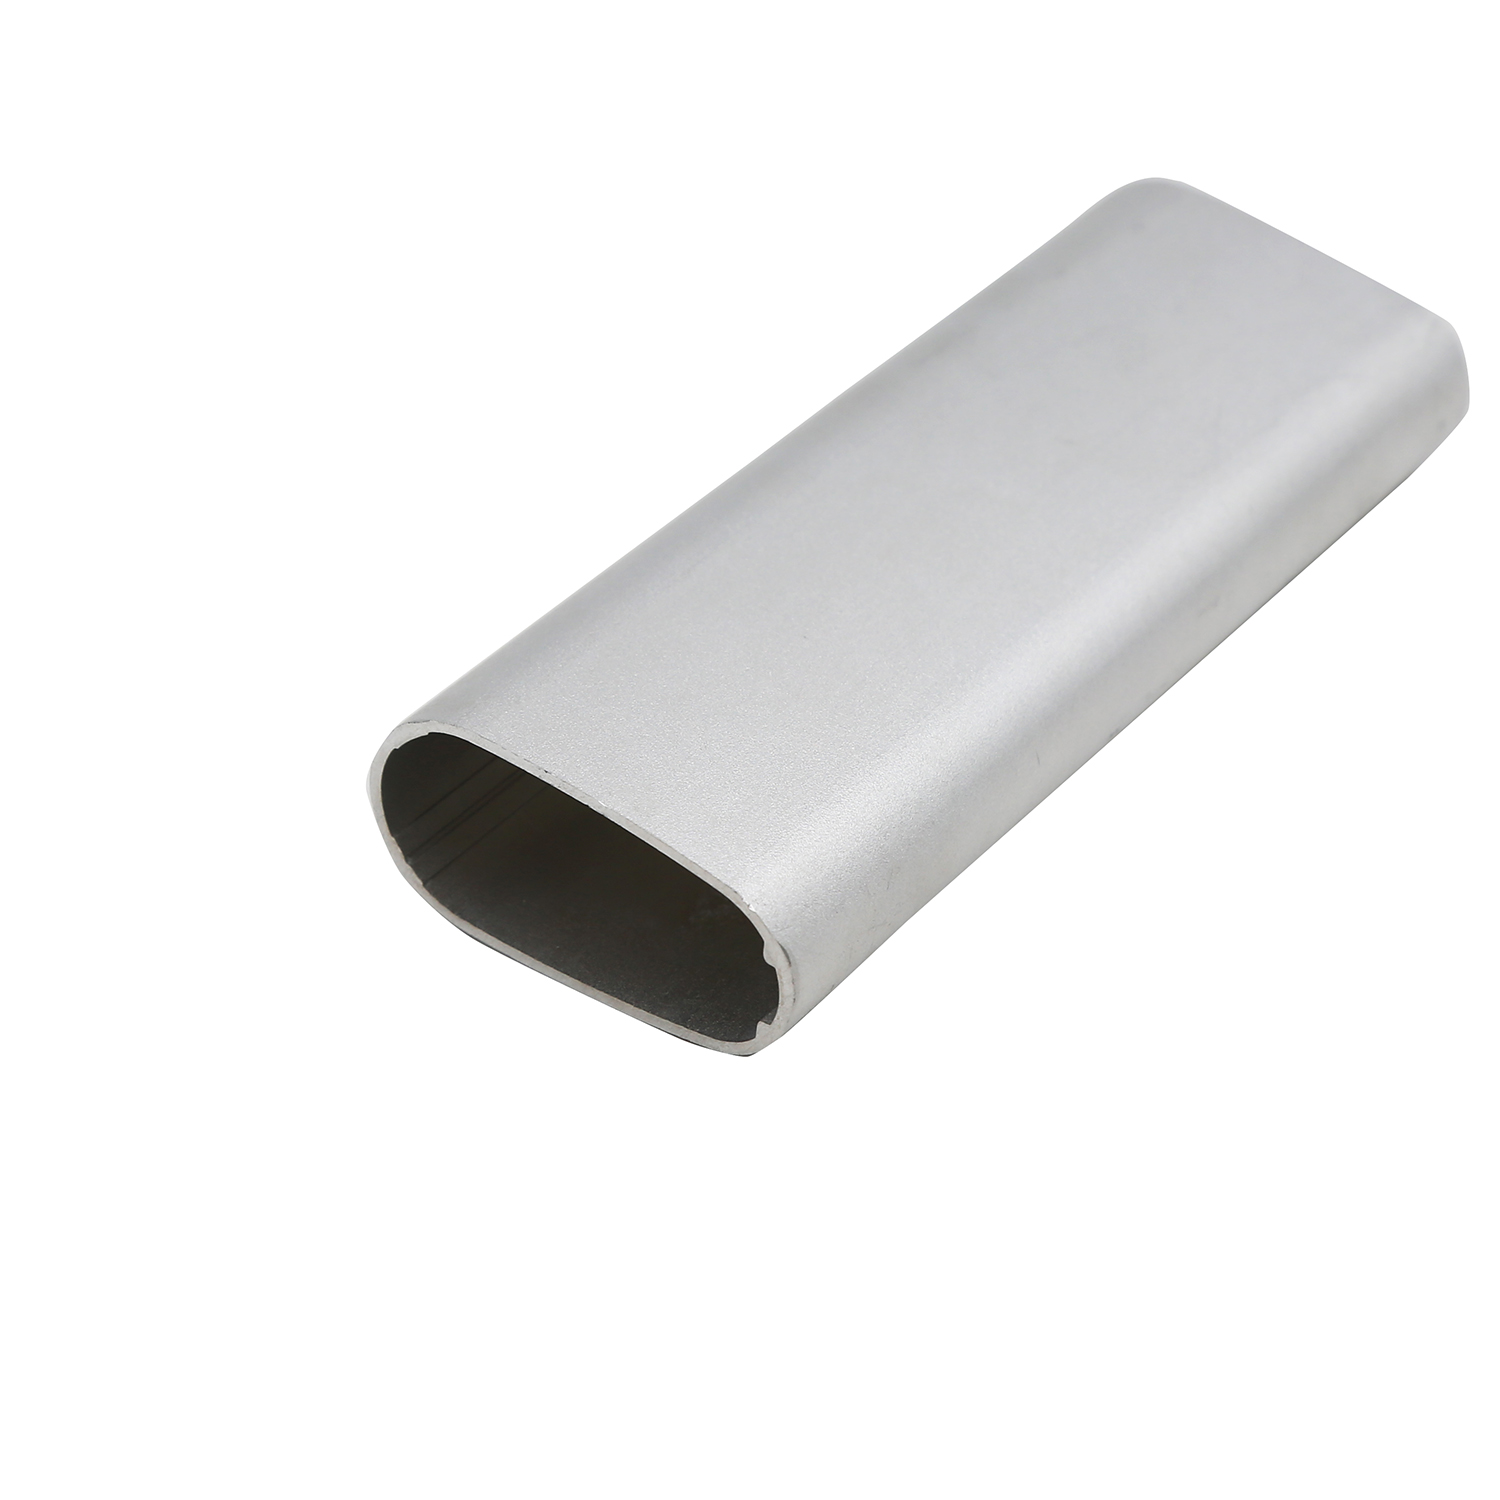 Perfil de extrusión de aluminio para tubo industrial.